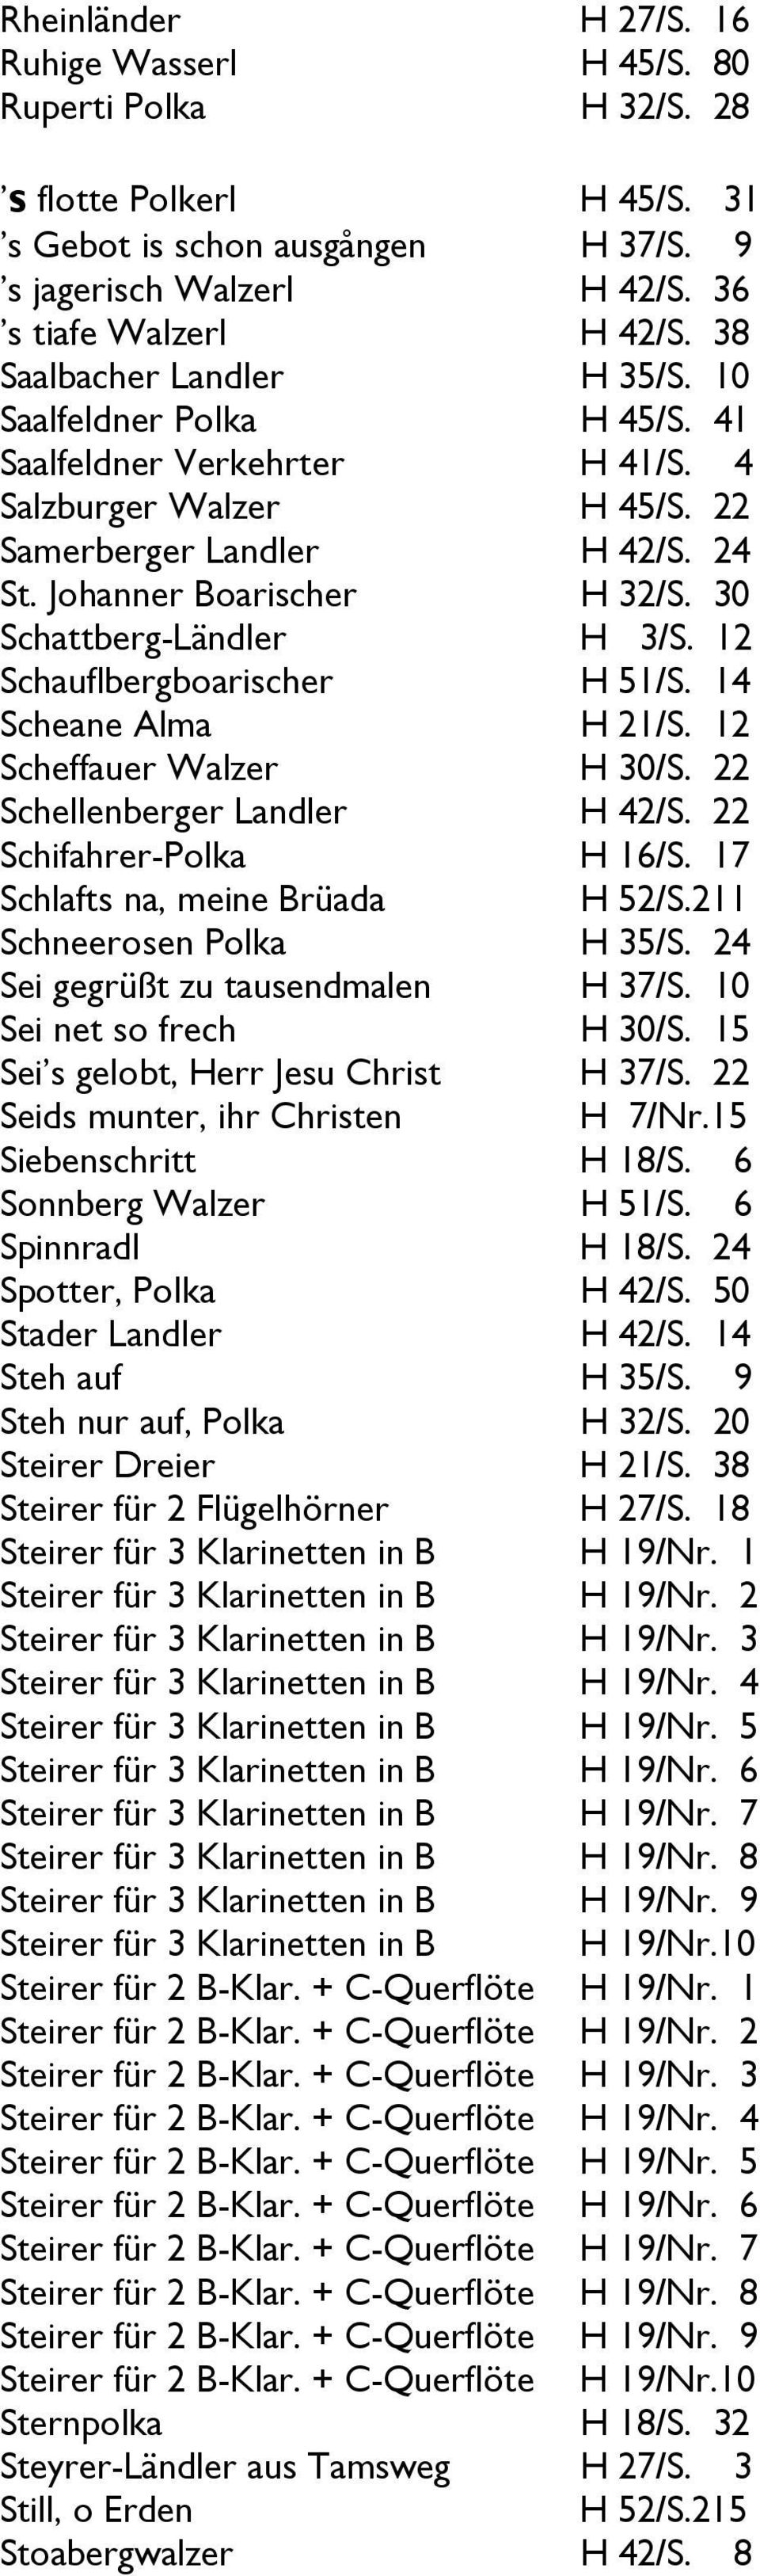 30 Schattberg-Ländler H 3/S. 12 Schauflbergboarischer H 51/S. 14 Scheane Alma H 21/S. 12 Scheffauer Walzer H 30/S. 22 Schellenberger Landler H 42/S. 22 Schifahrer-Polka H 16/S.